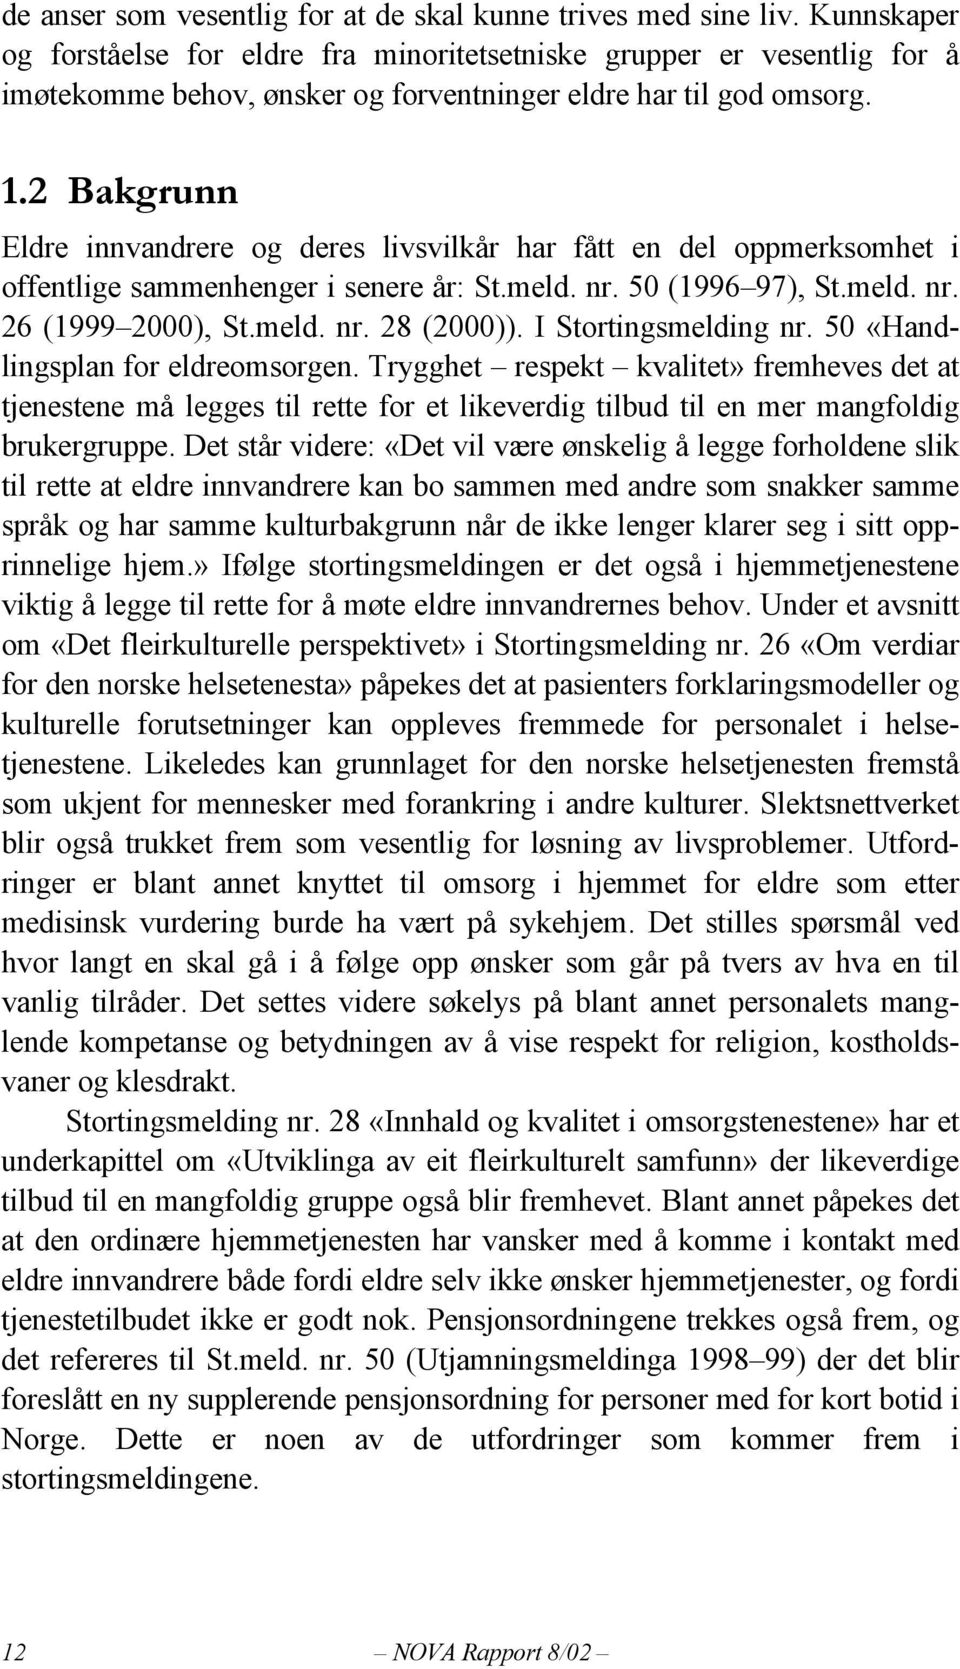 2 Bakgrunn Eldre innvandrere og deres livsvilkår har fått en del oppmerksomhet i offentlige sammenhenger i senere år: St.meld. nr. 50 (1996 97), St.meld. nr. 26 (1999 2000), St.meld. nr. 28 (2000)).